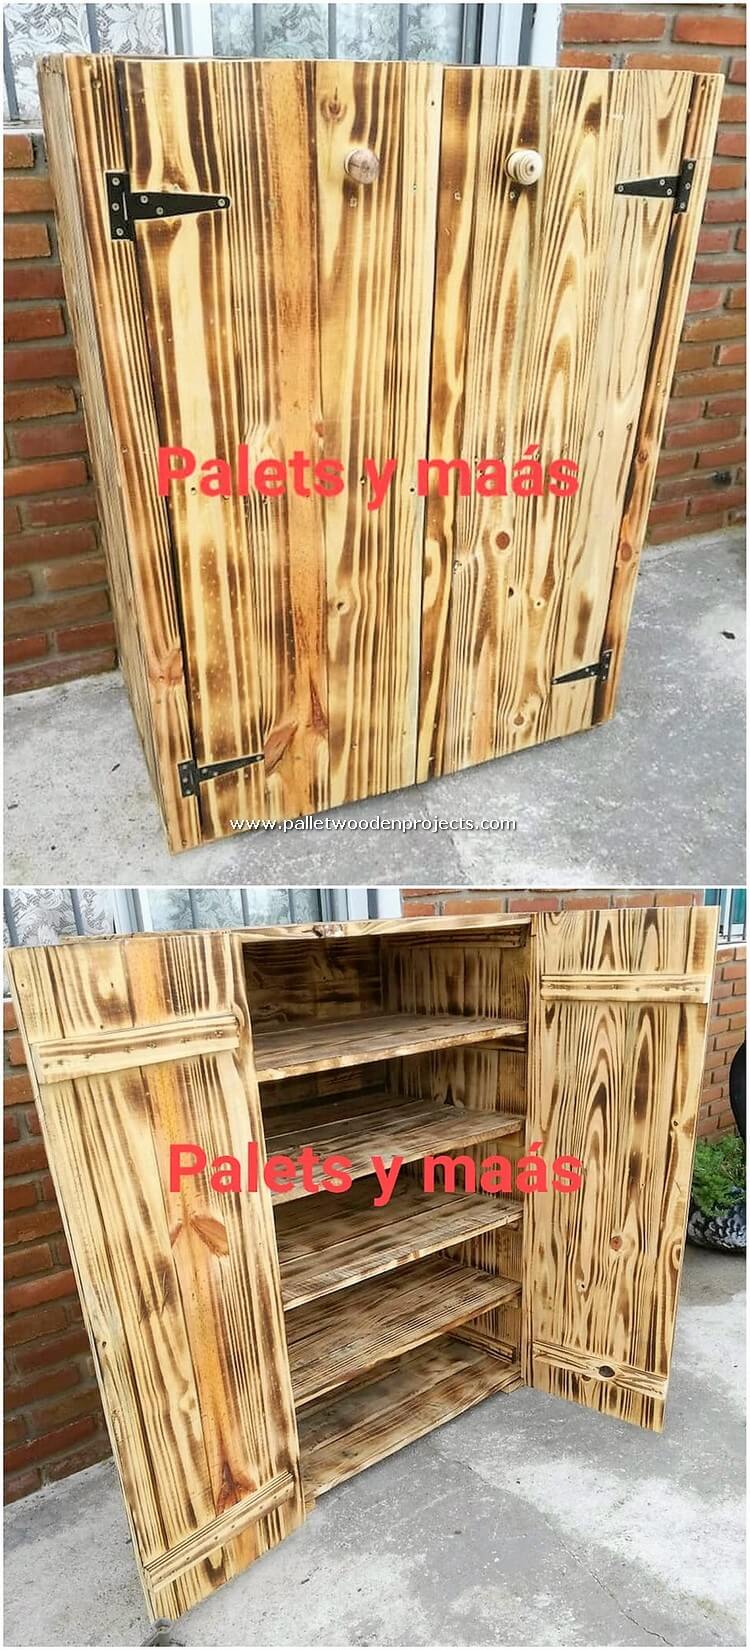 Gabinete de palets de madera